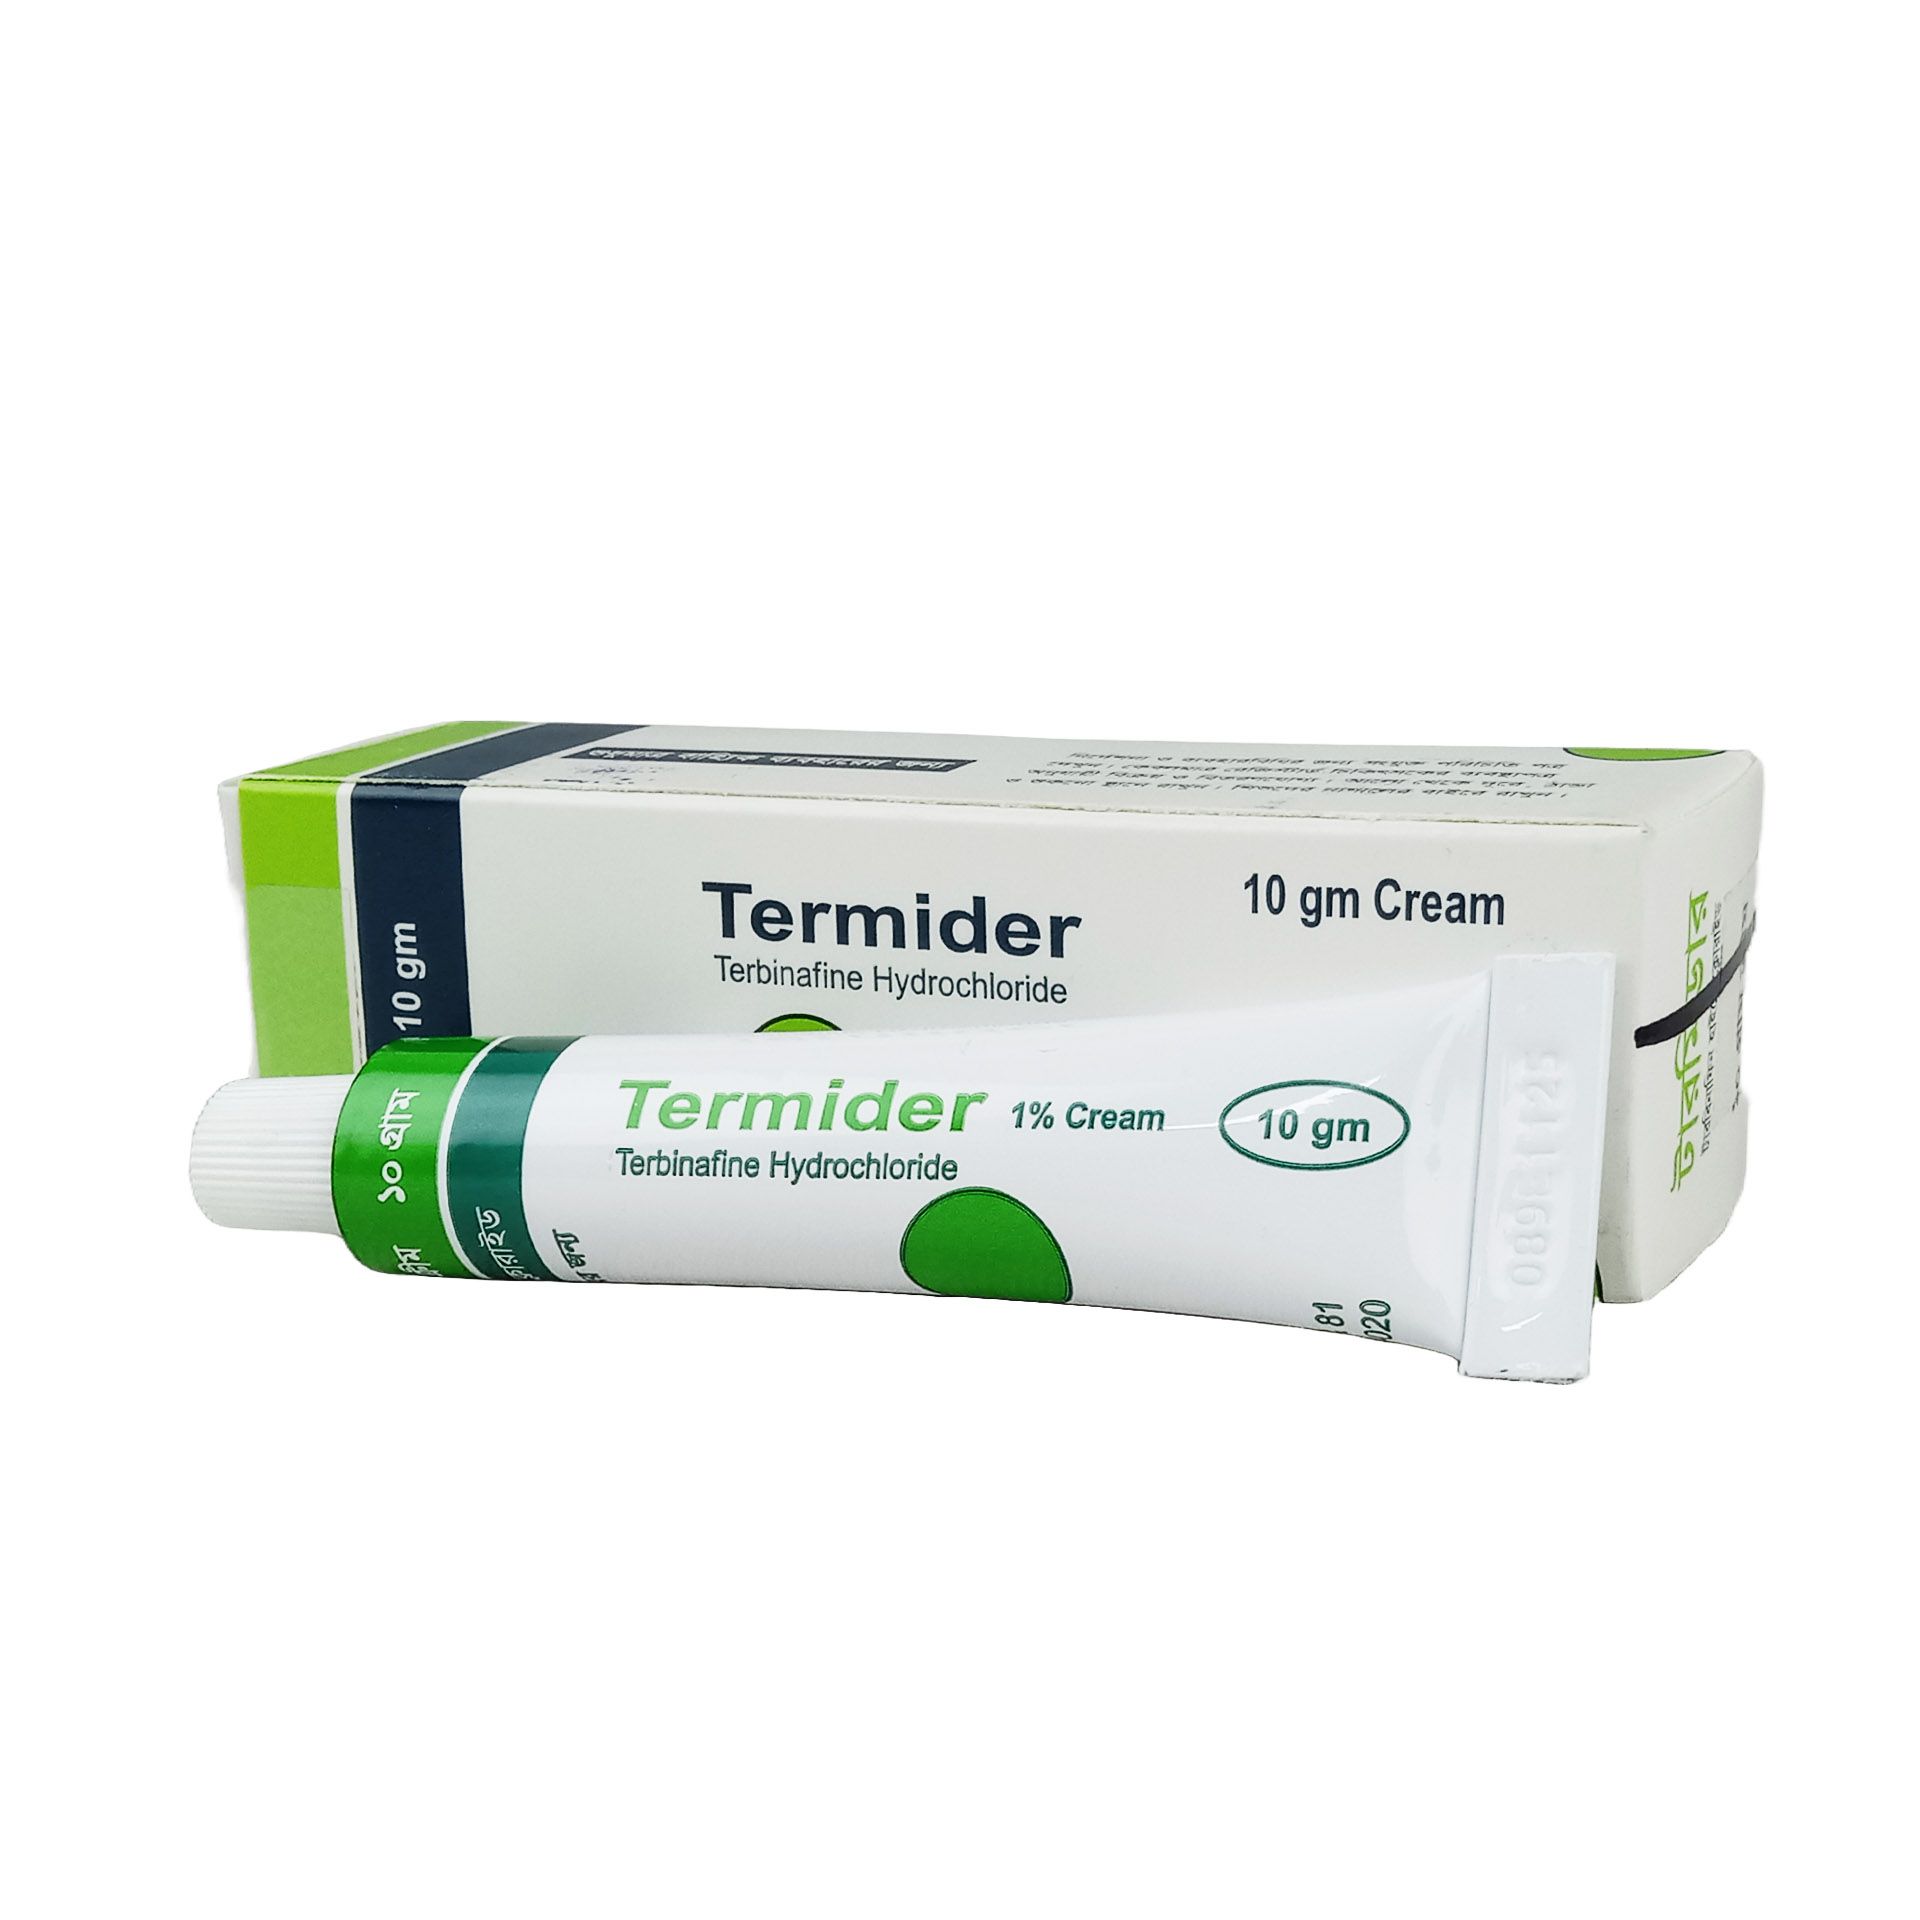 Termider Cream 1% Cream